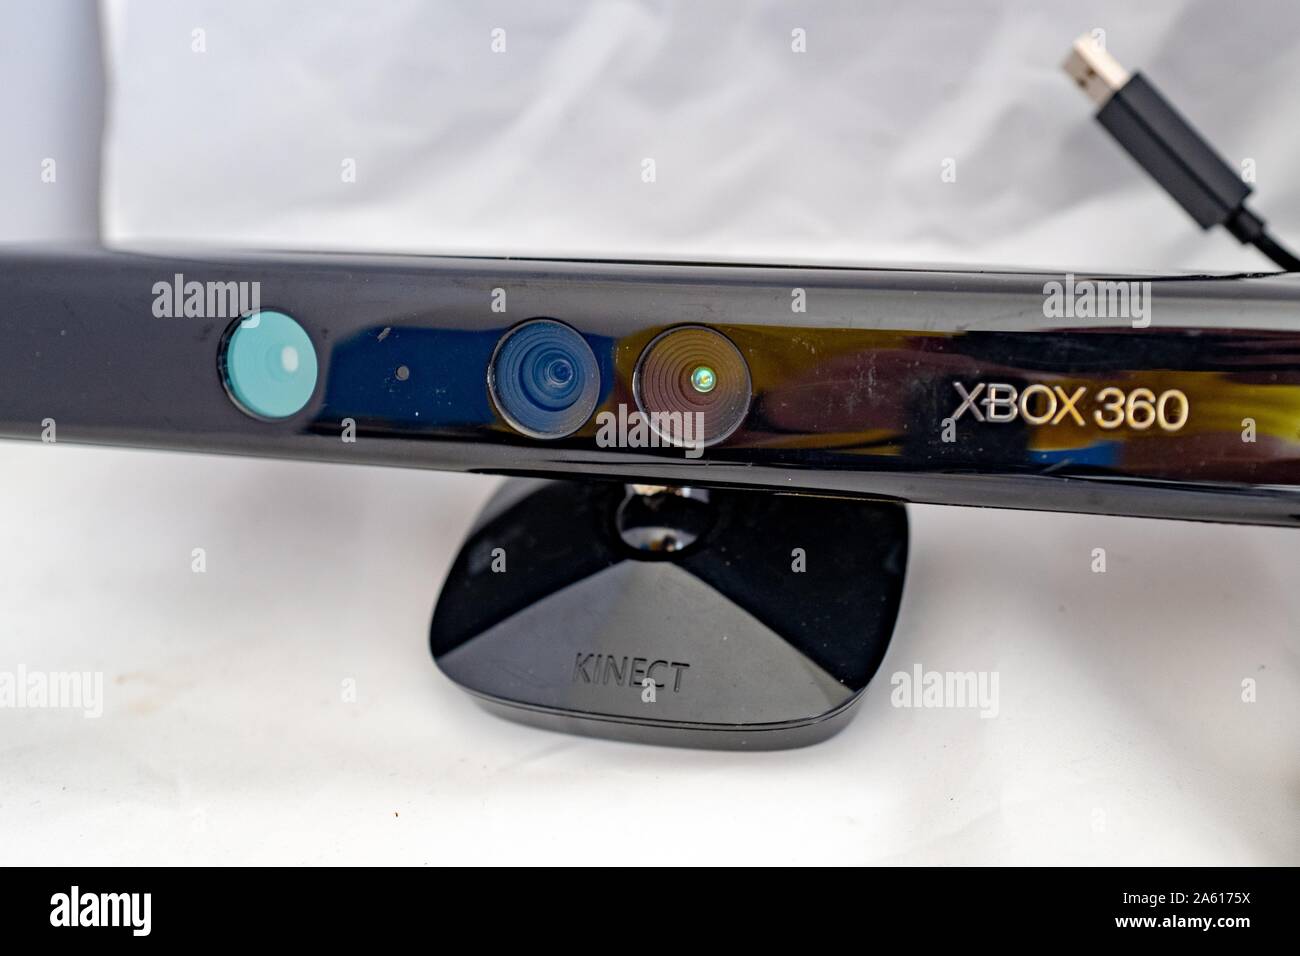 Gros plan sur la manette de jeu de détection de mouvement Xbox 360 Kinect  de première génération, une caméra de faible profondeur conçue pour  permettre le contrôle gestuel des systèmes de jeux